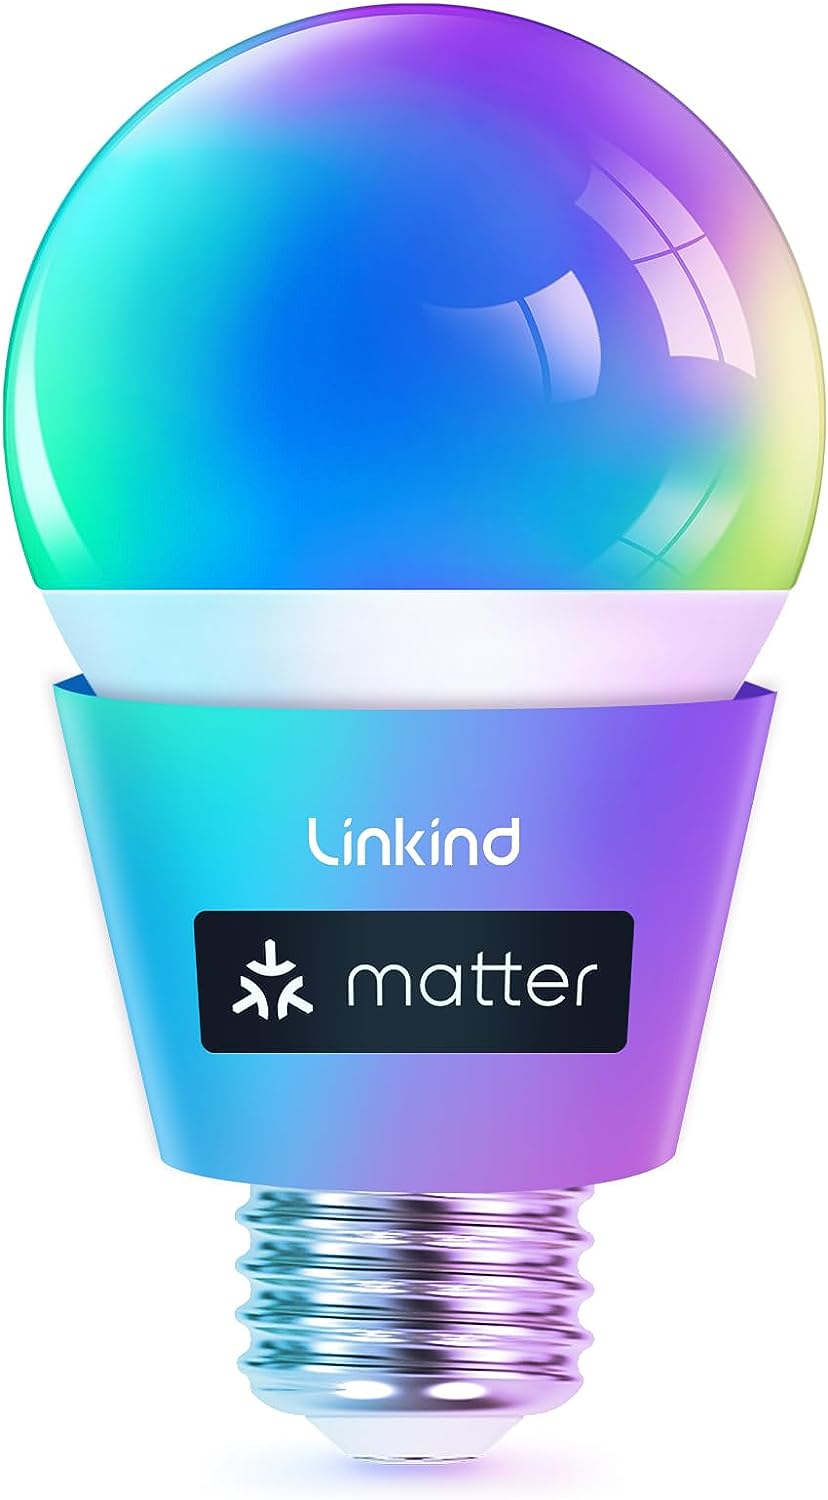 Linkind Matter WiFi Smart Light Bulbs